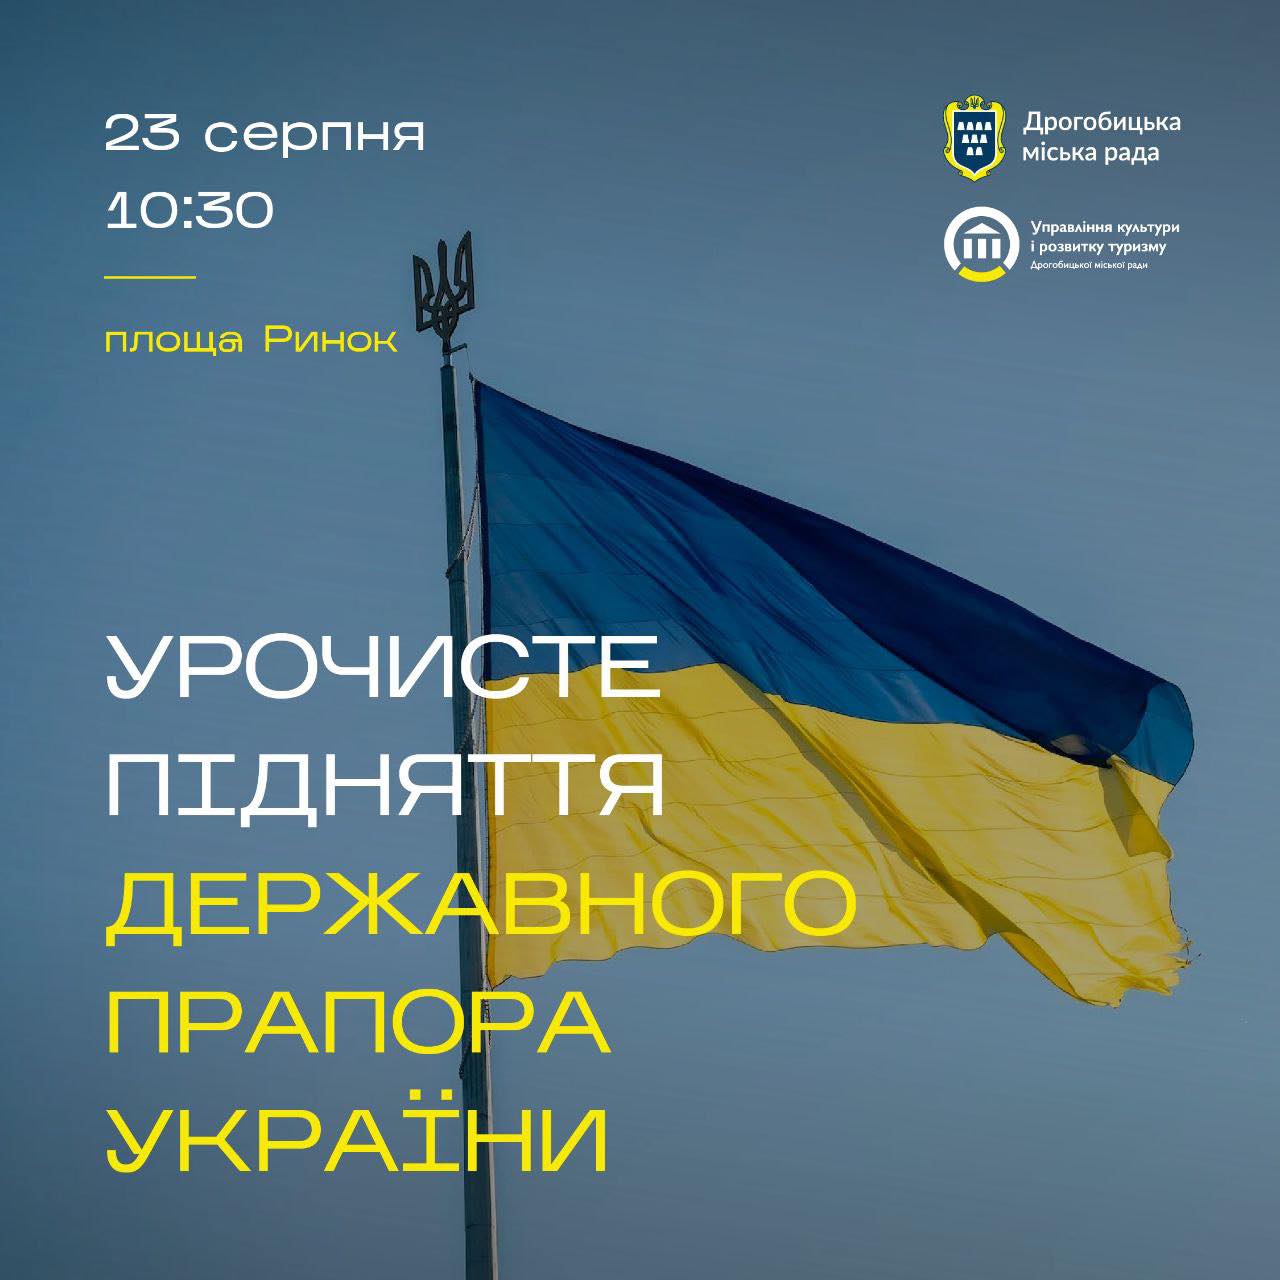 Дрогобичан та гостей міста запрошують 23 серпня на урочисте підняття державного прапора України